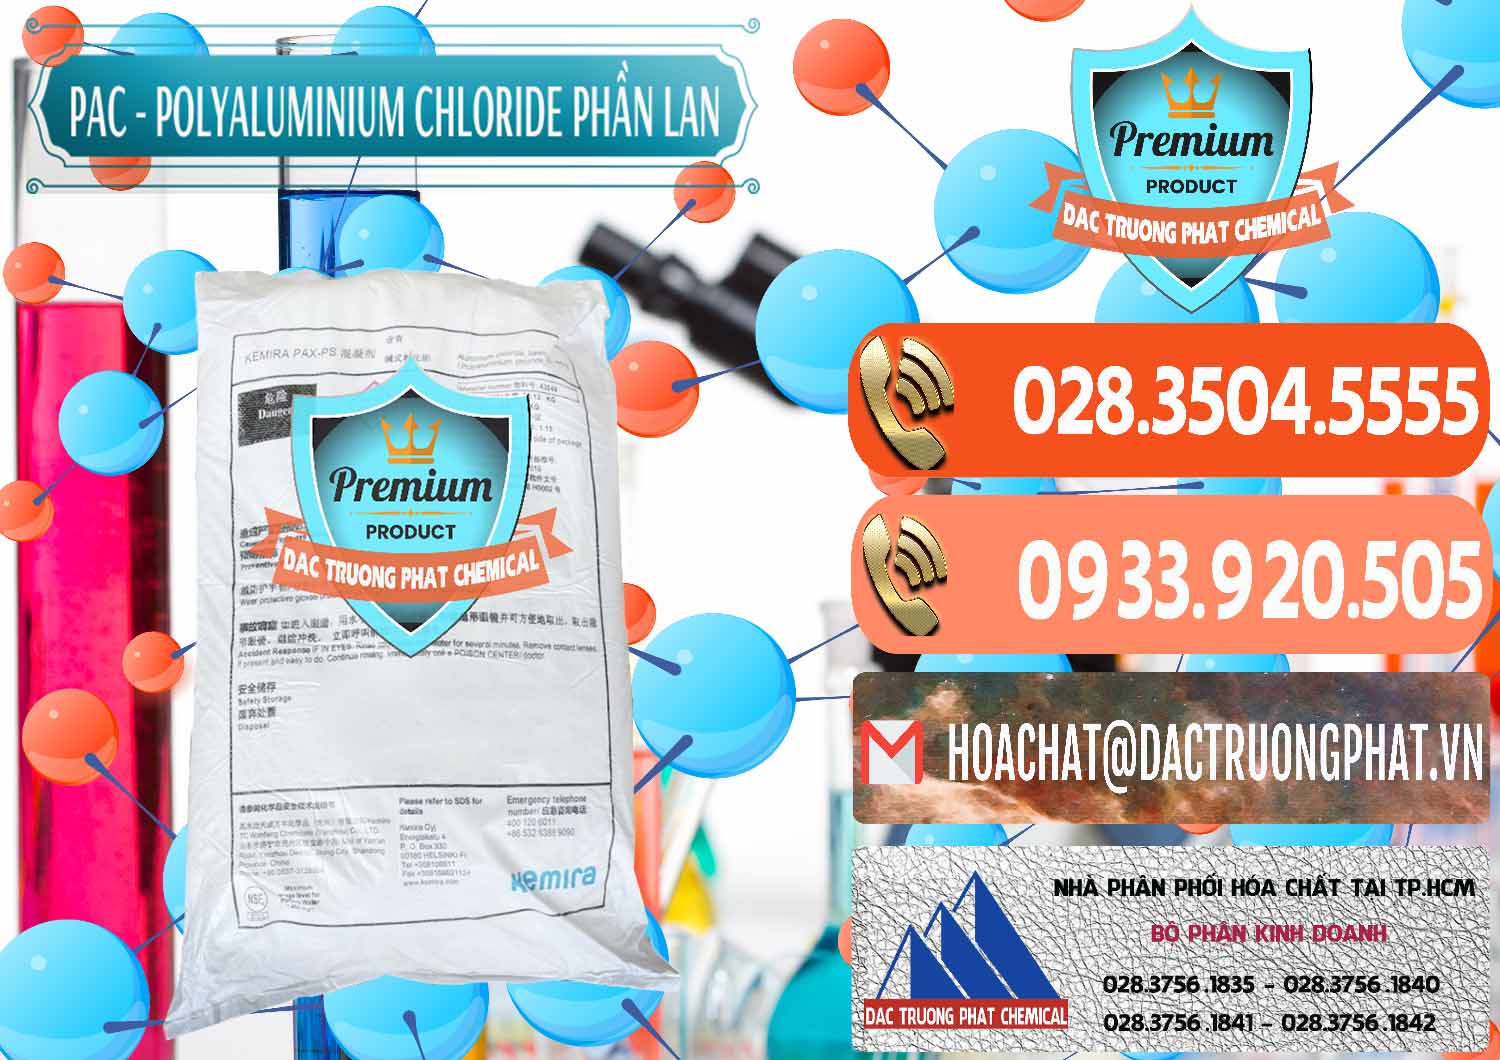 Công ty chuyên phân phối và bán PAC - Polyaluminium Chloride Phần Lan Finland - 0383 - Công ty phân phối & cung cấp hóa chất tại TP.HCM - hoachatmientay.com